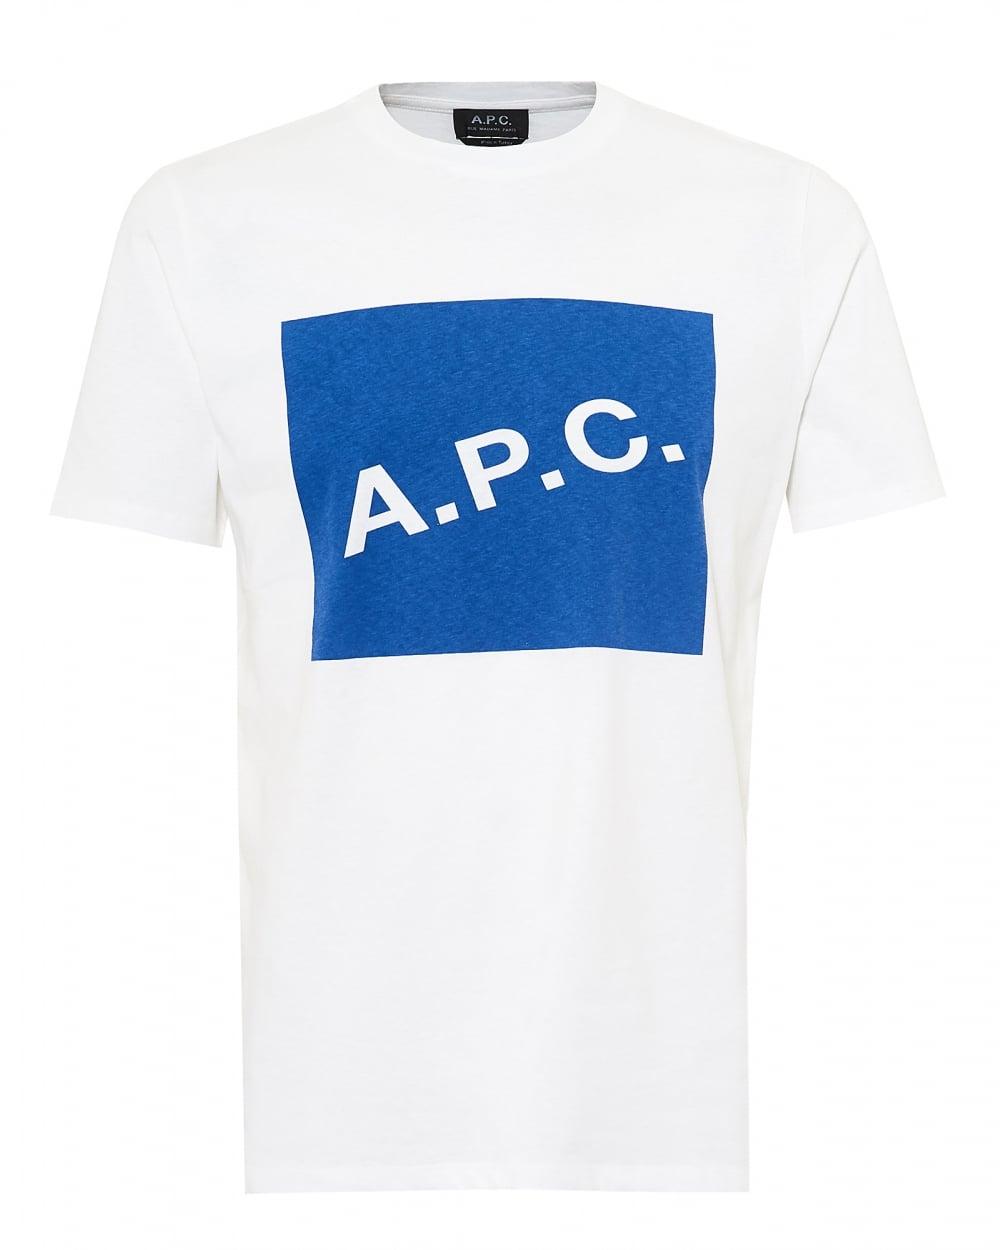 White Box Logo - A.P.C. Mens Kraft T-Shirt, A.P.C. Box Logo White Tee